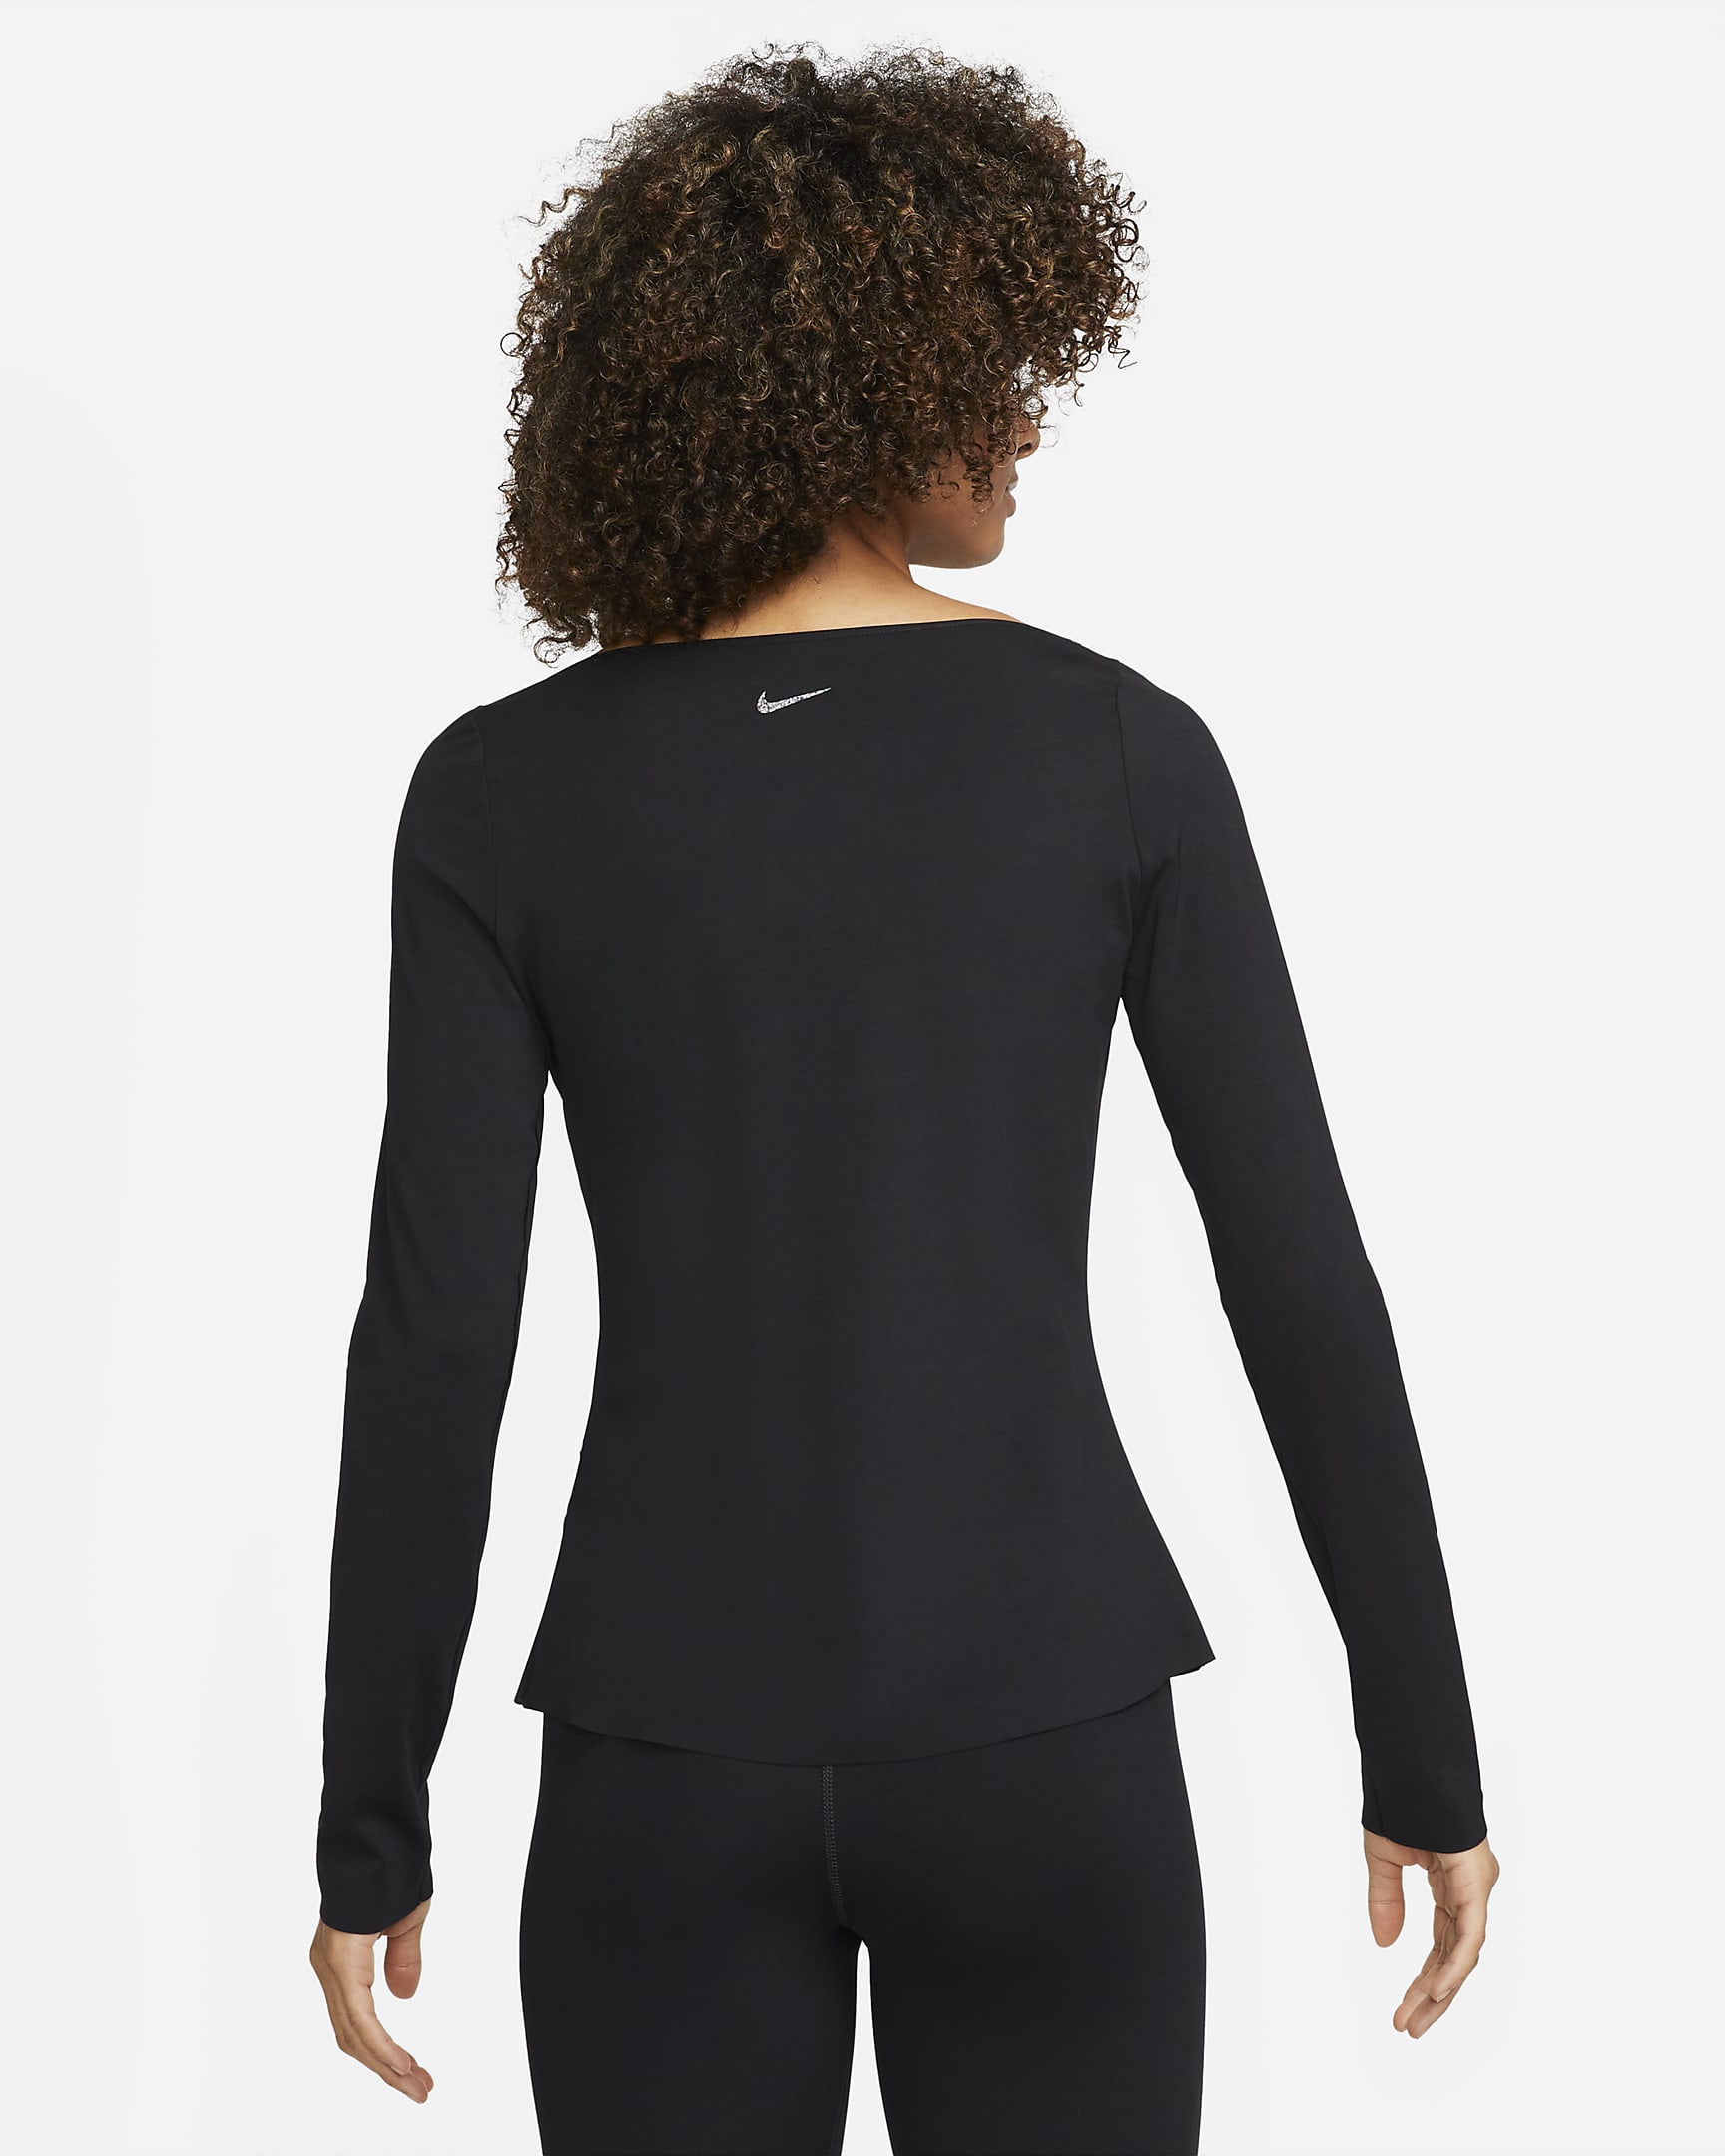 Playera de manga larga para mujer Nike Yoga Dri-FIT Luxe. Nike.com